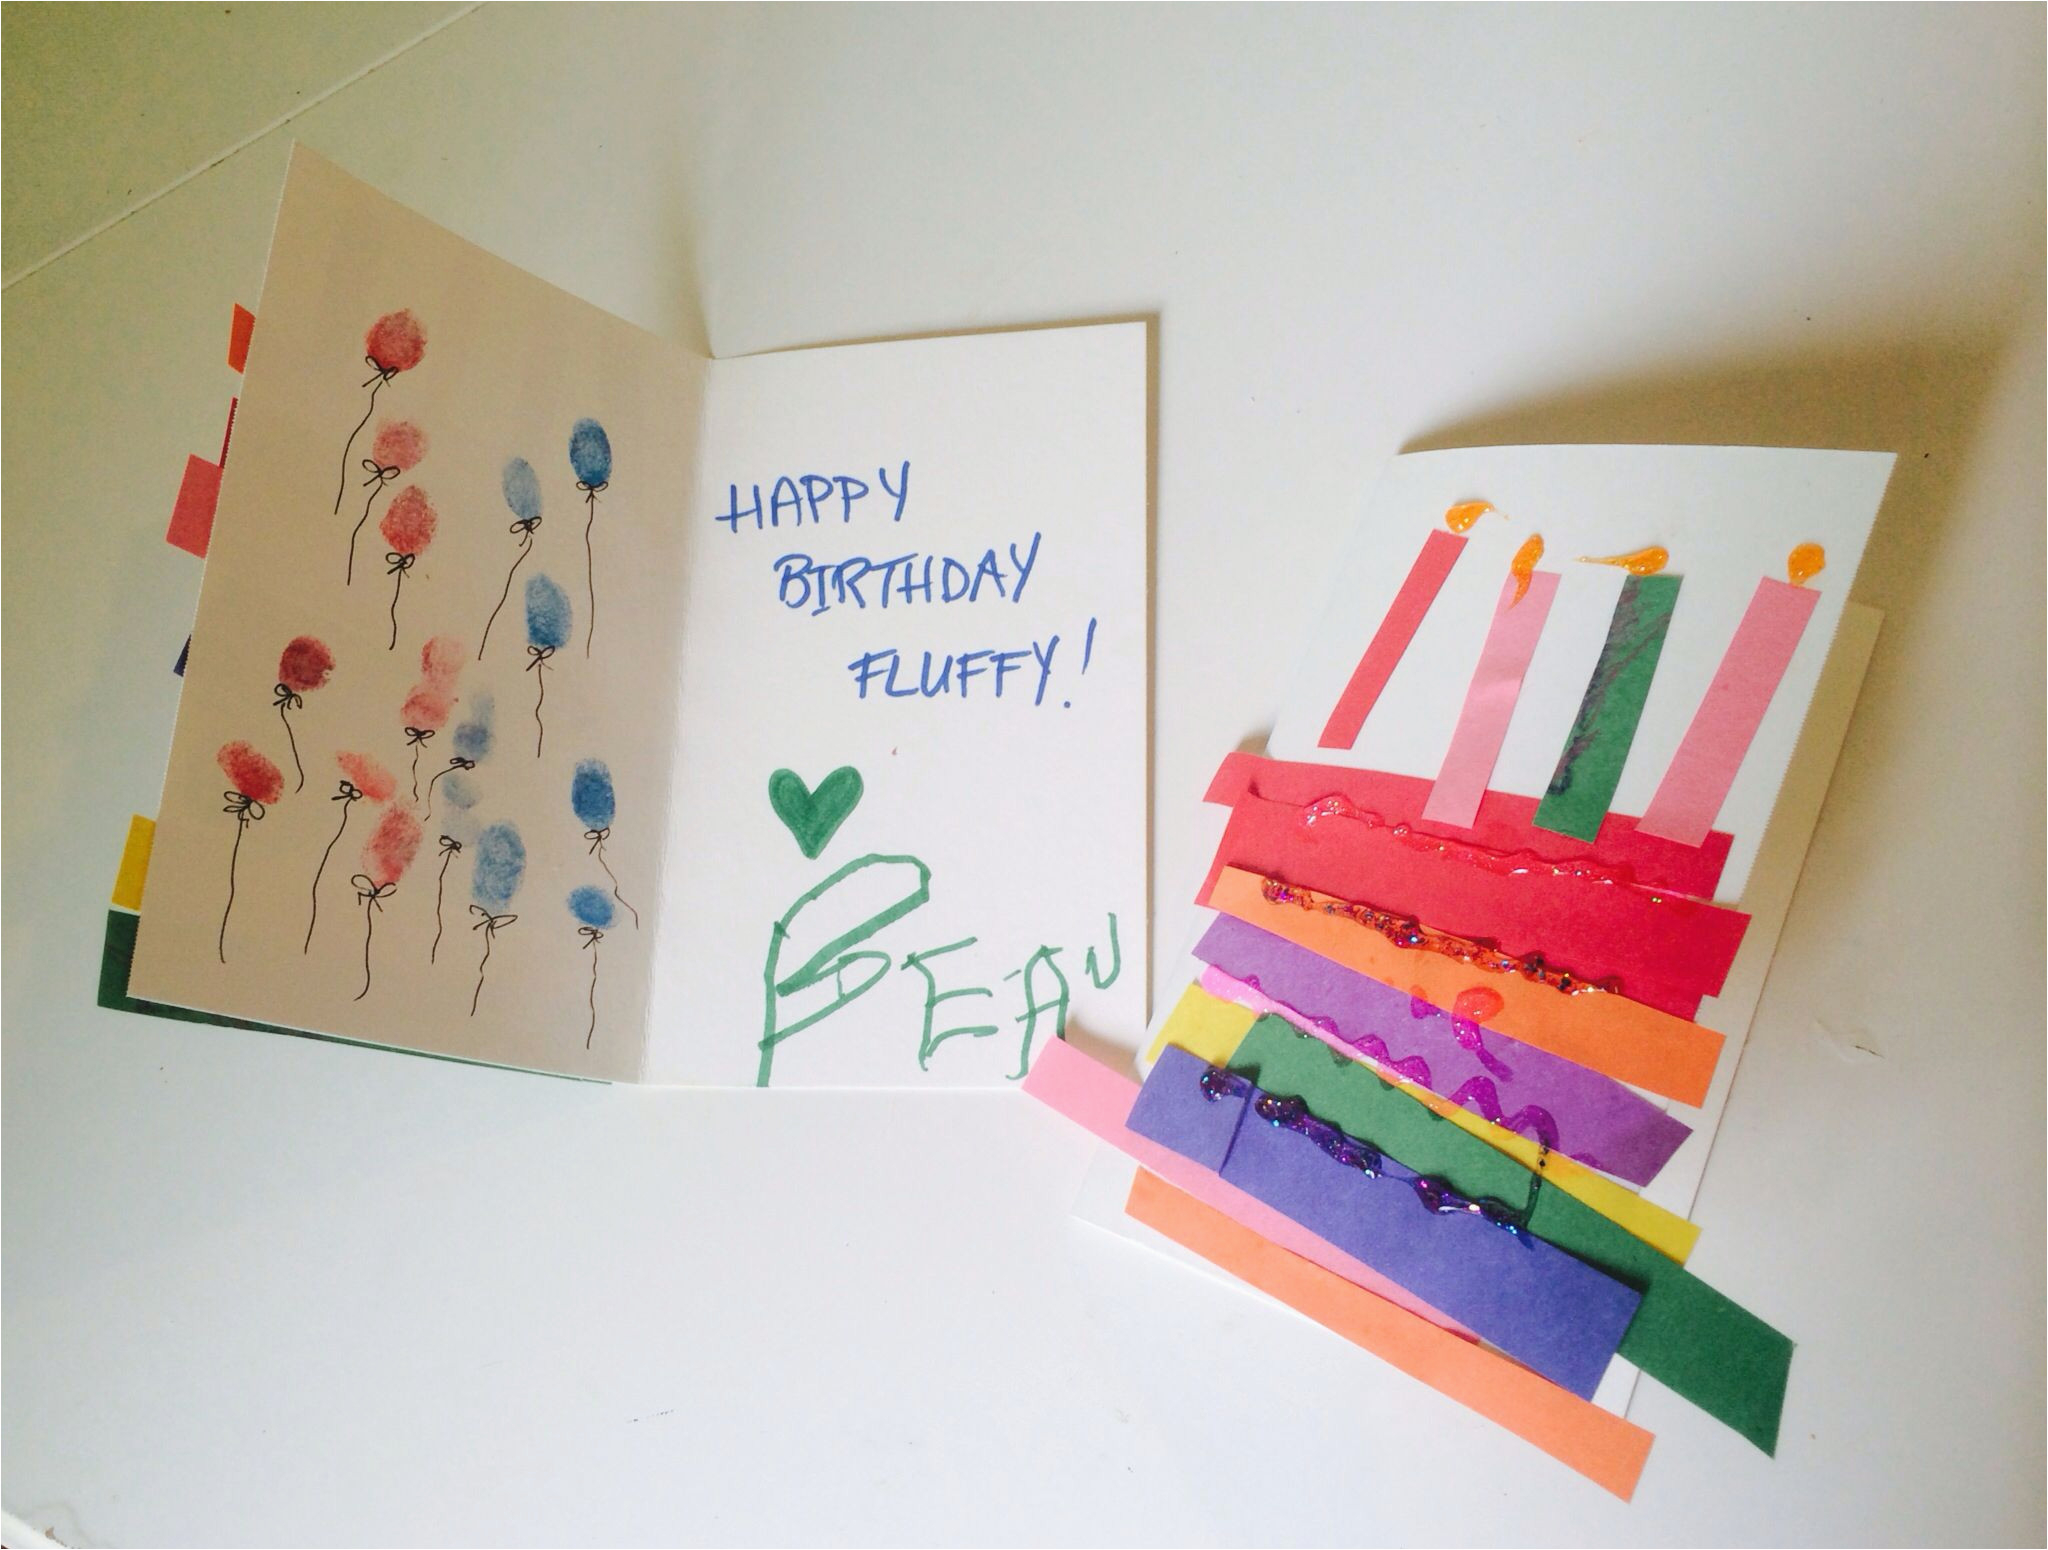 Birthday Card Ideas For Brother Diy Birthday Card Ideas For Brother Birthday Cards Made Toddlers